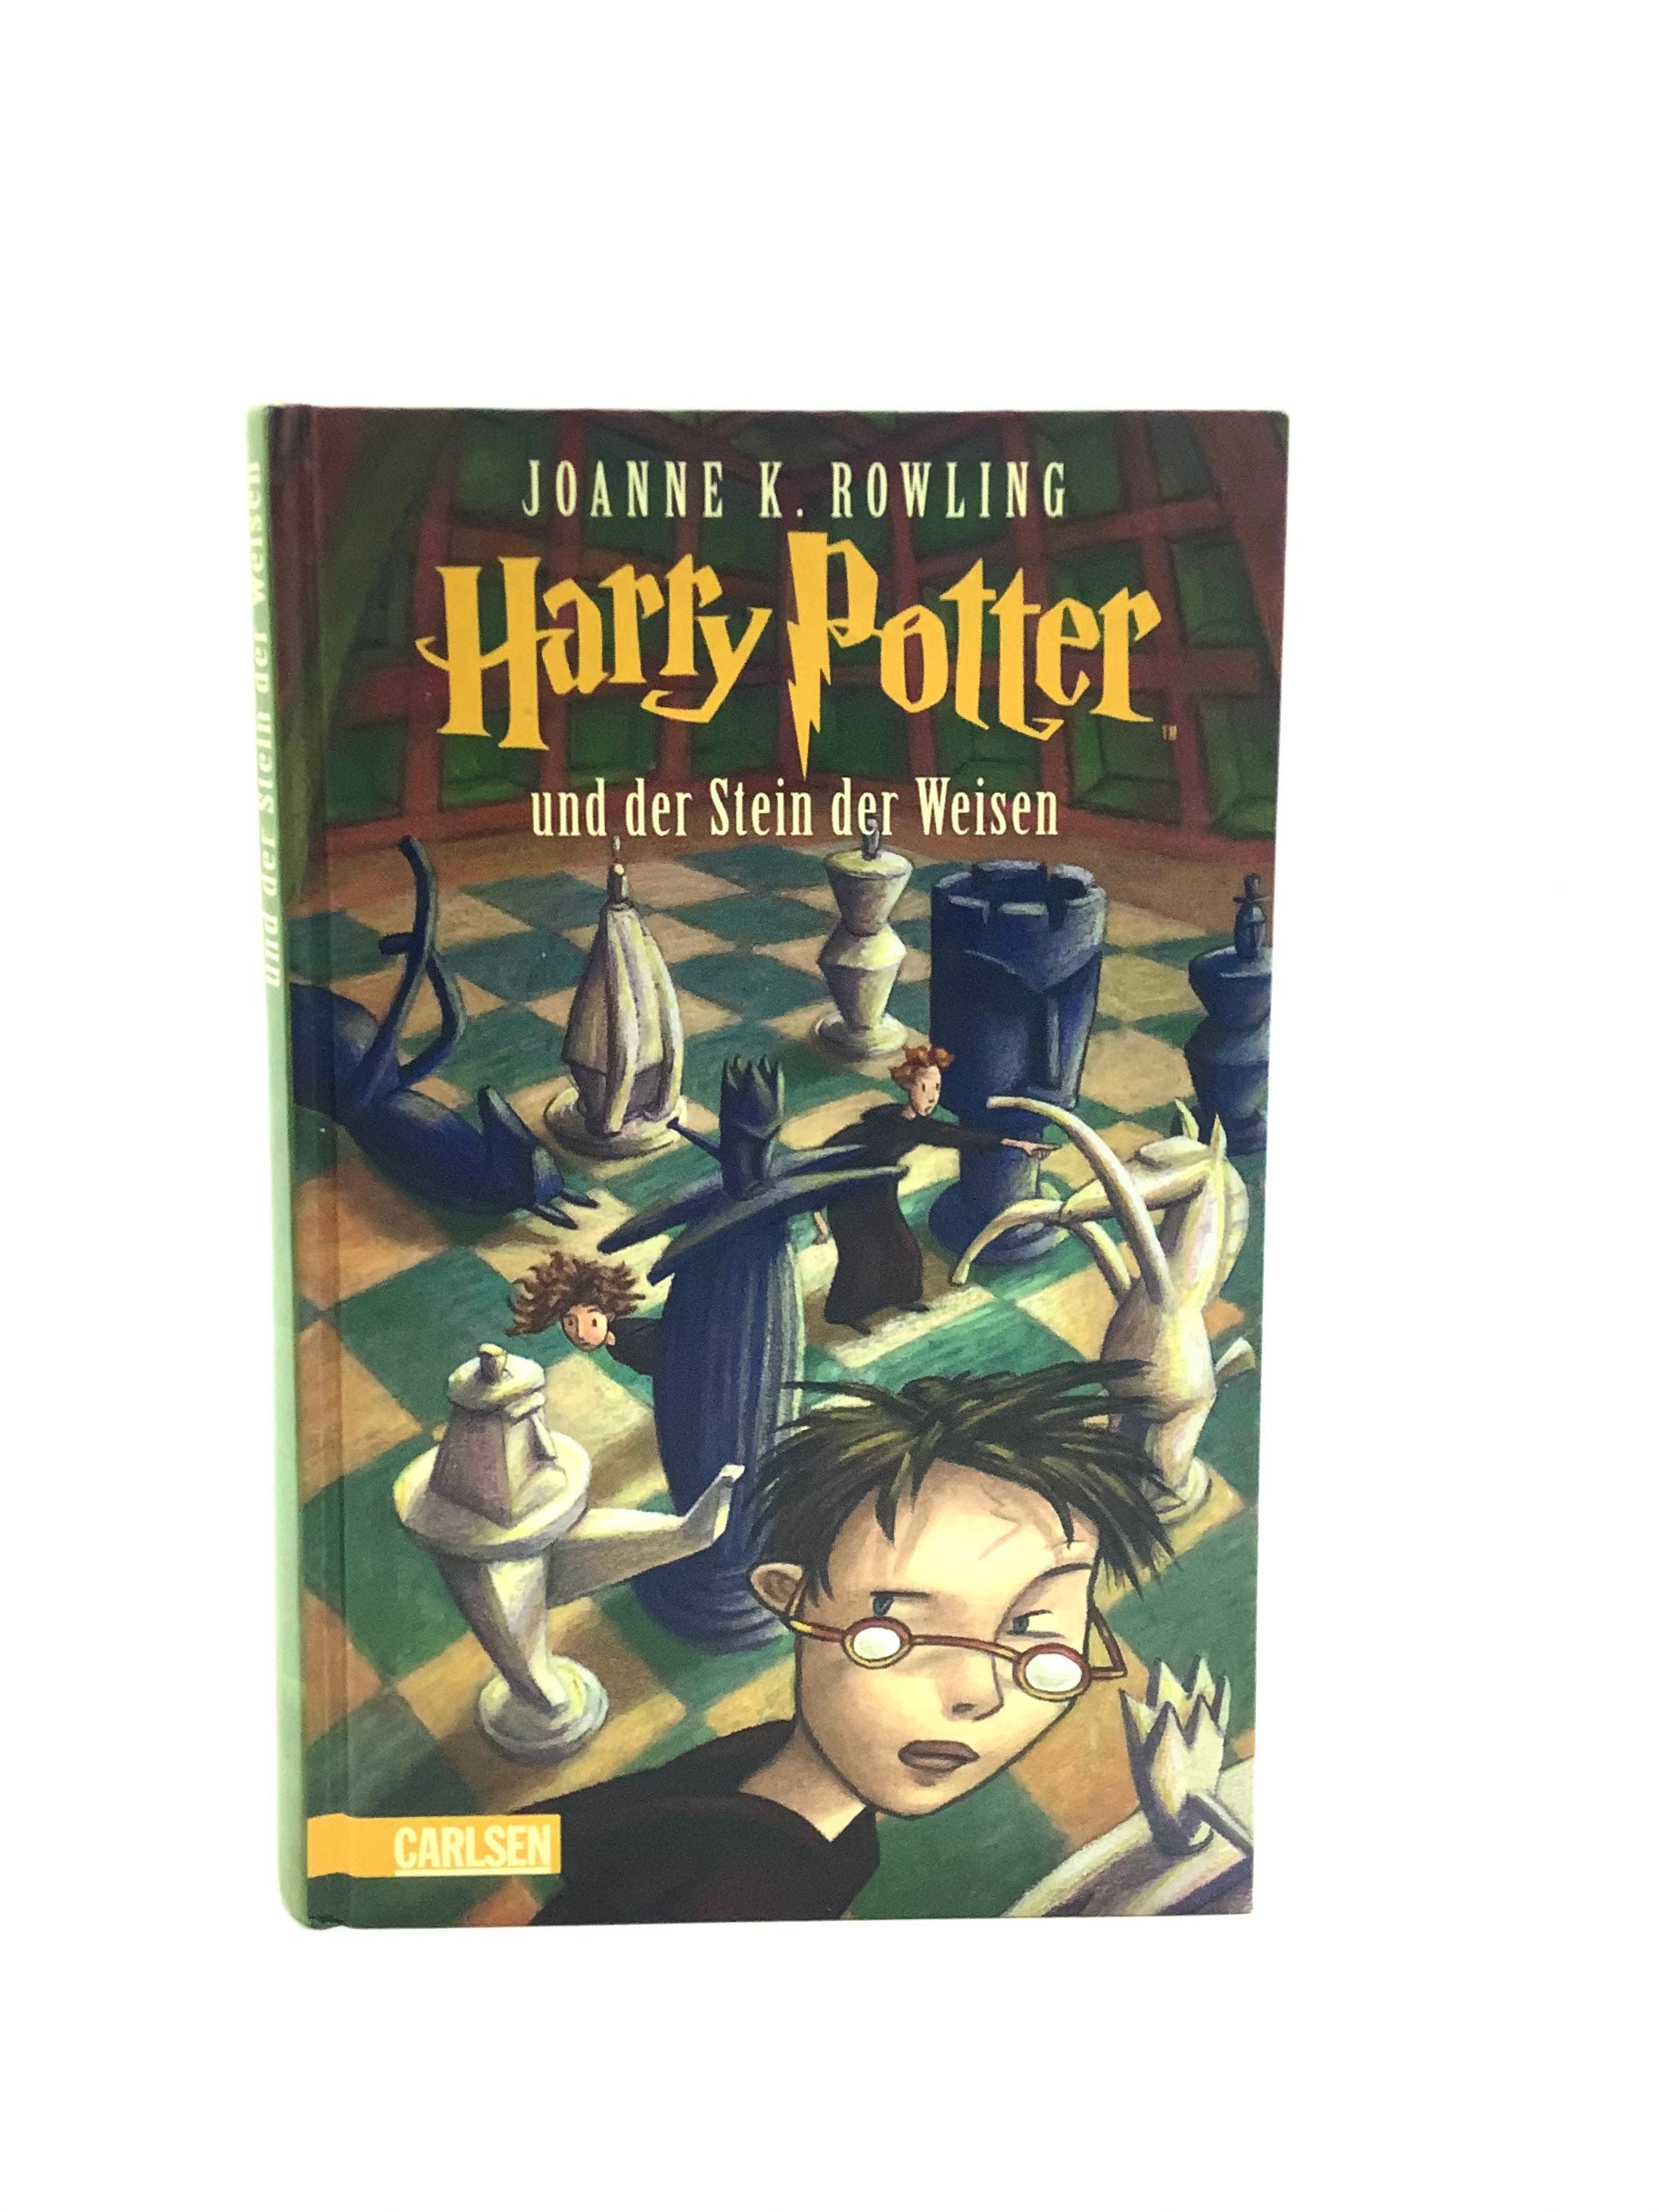 Prima edizione tedesca 1998 HARRY POTTER und der Stein der Weisen La pietra  filosofale di Joanne K. Rowling con errori originali -  Italia